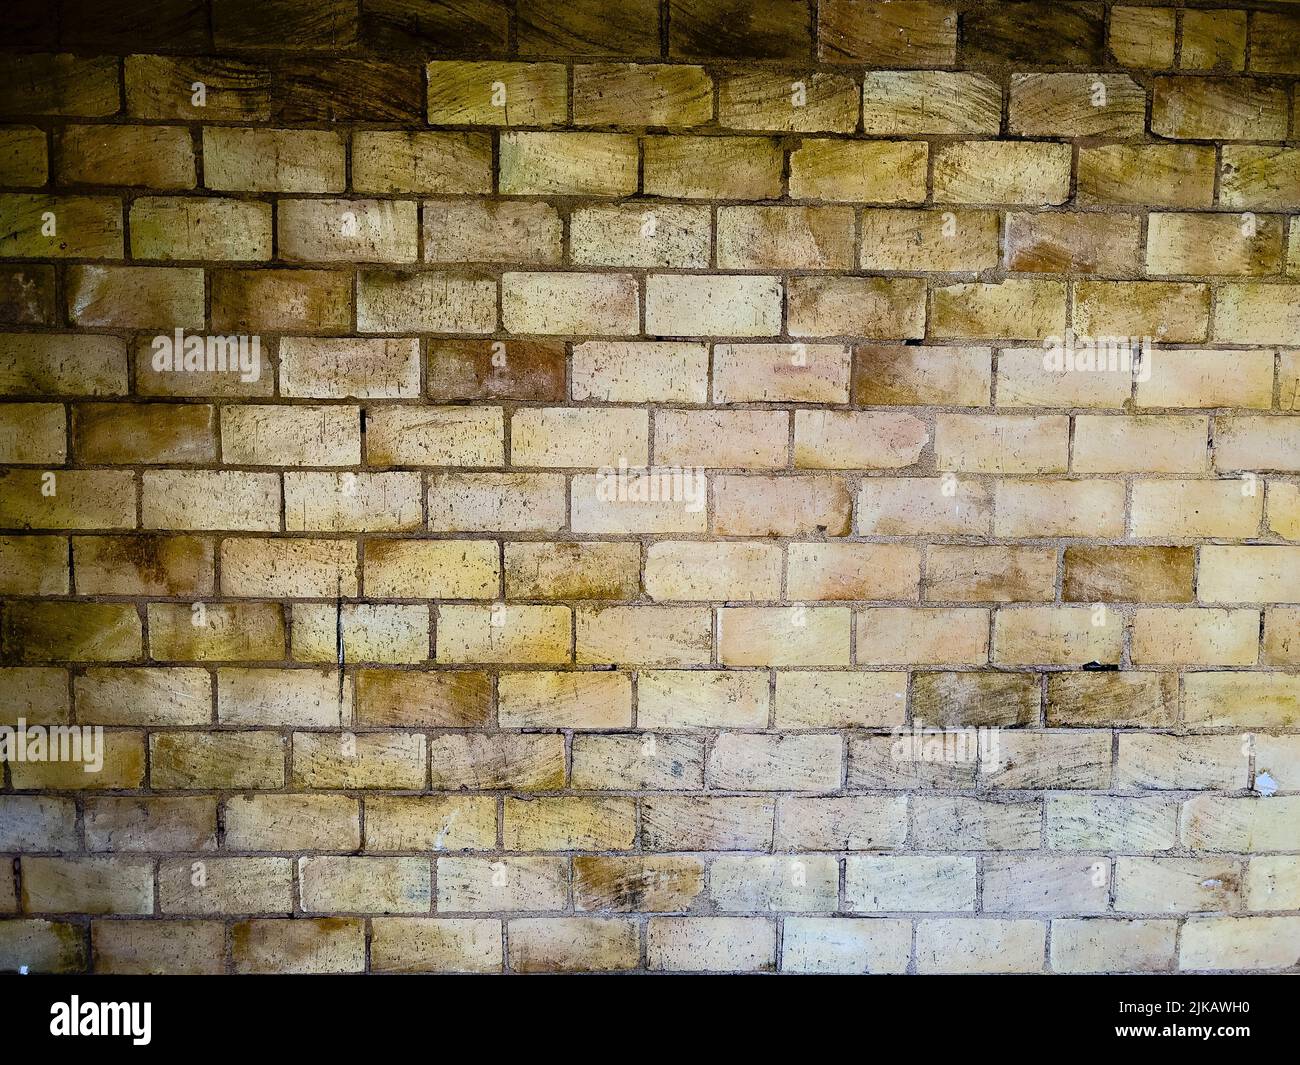 Marrón beige pared de ladrillo grunge fondo texturizado - foto de archivo Foto de stock